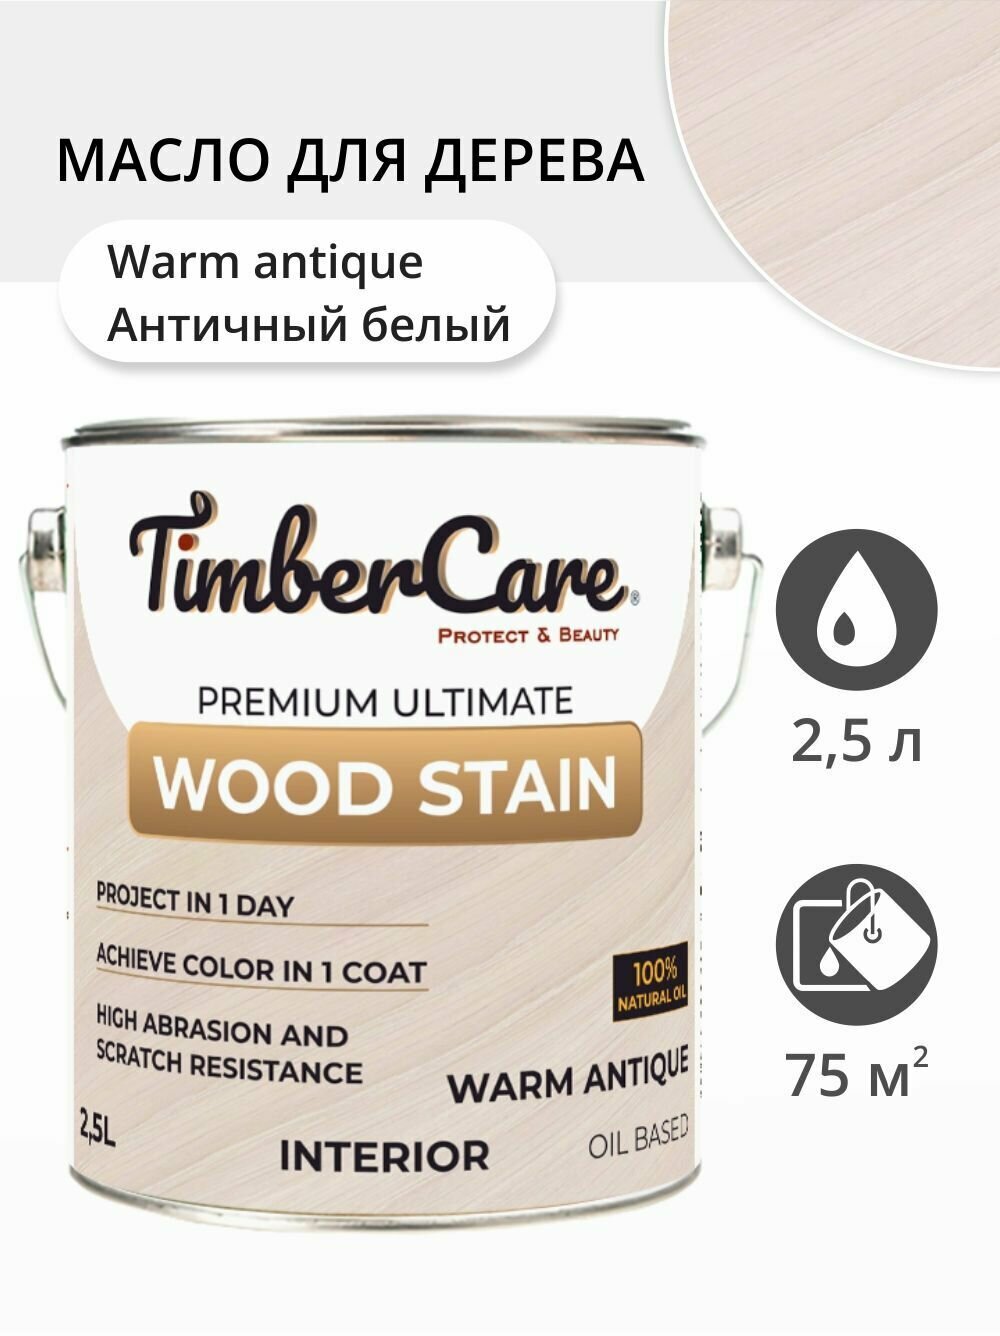 Масло для дерева и мебели TimberCare Wood Stain, быстросохнущие масла для дерева для внутренних работ, Античный белый / Warm Antique, 2.5 л